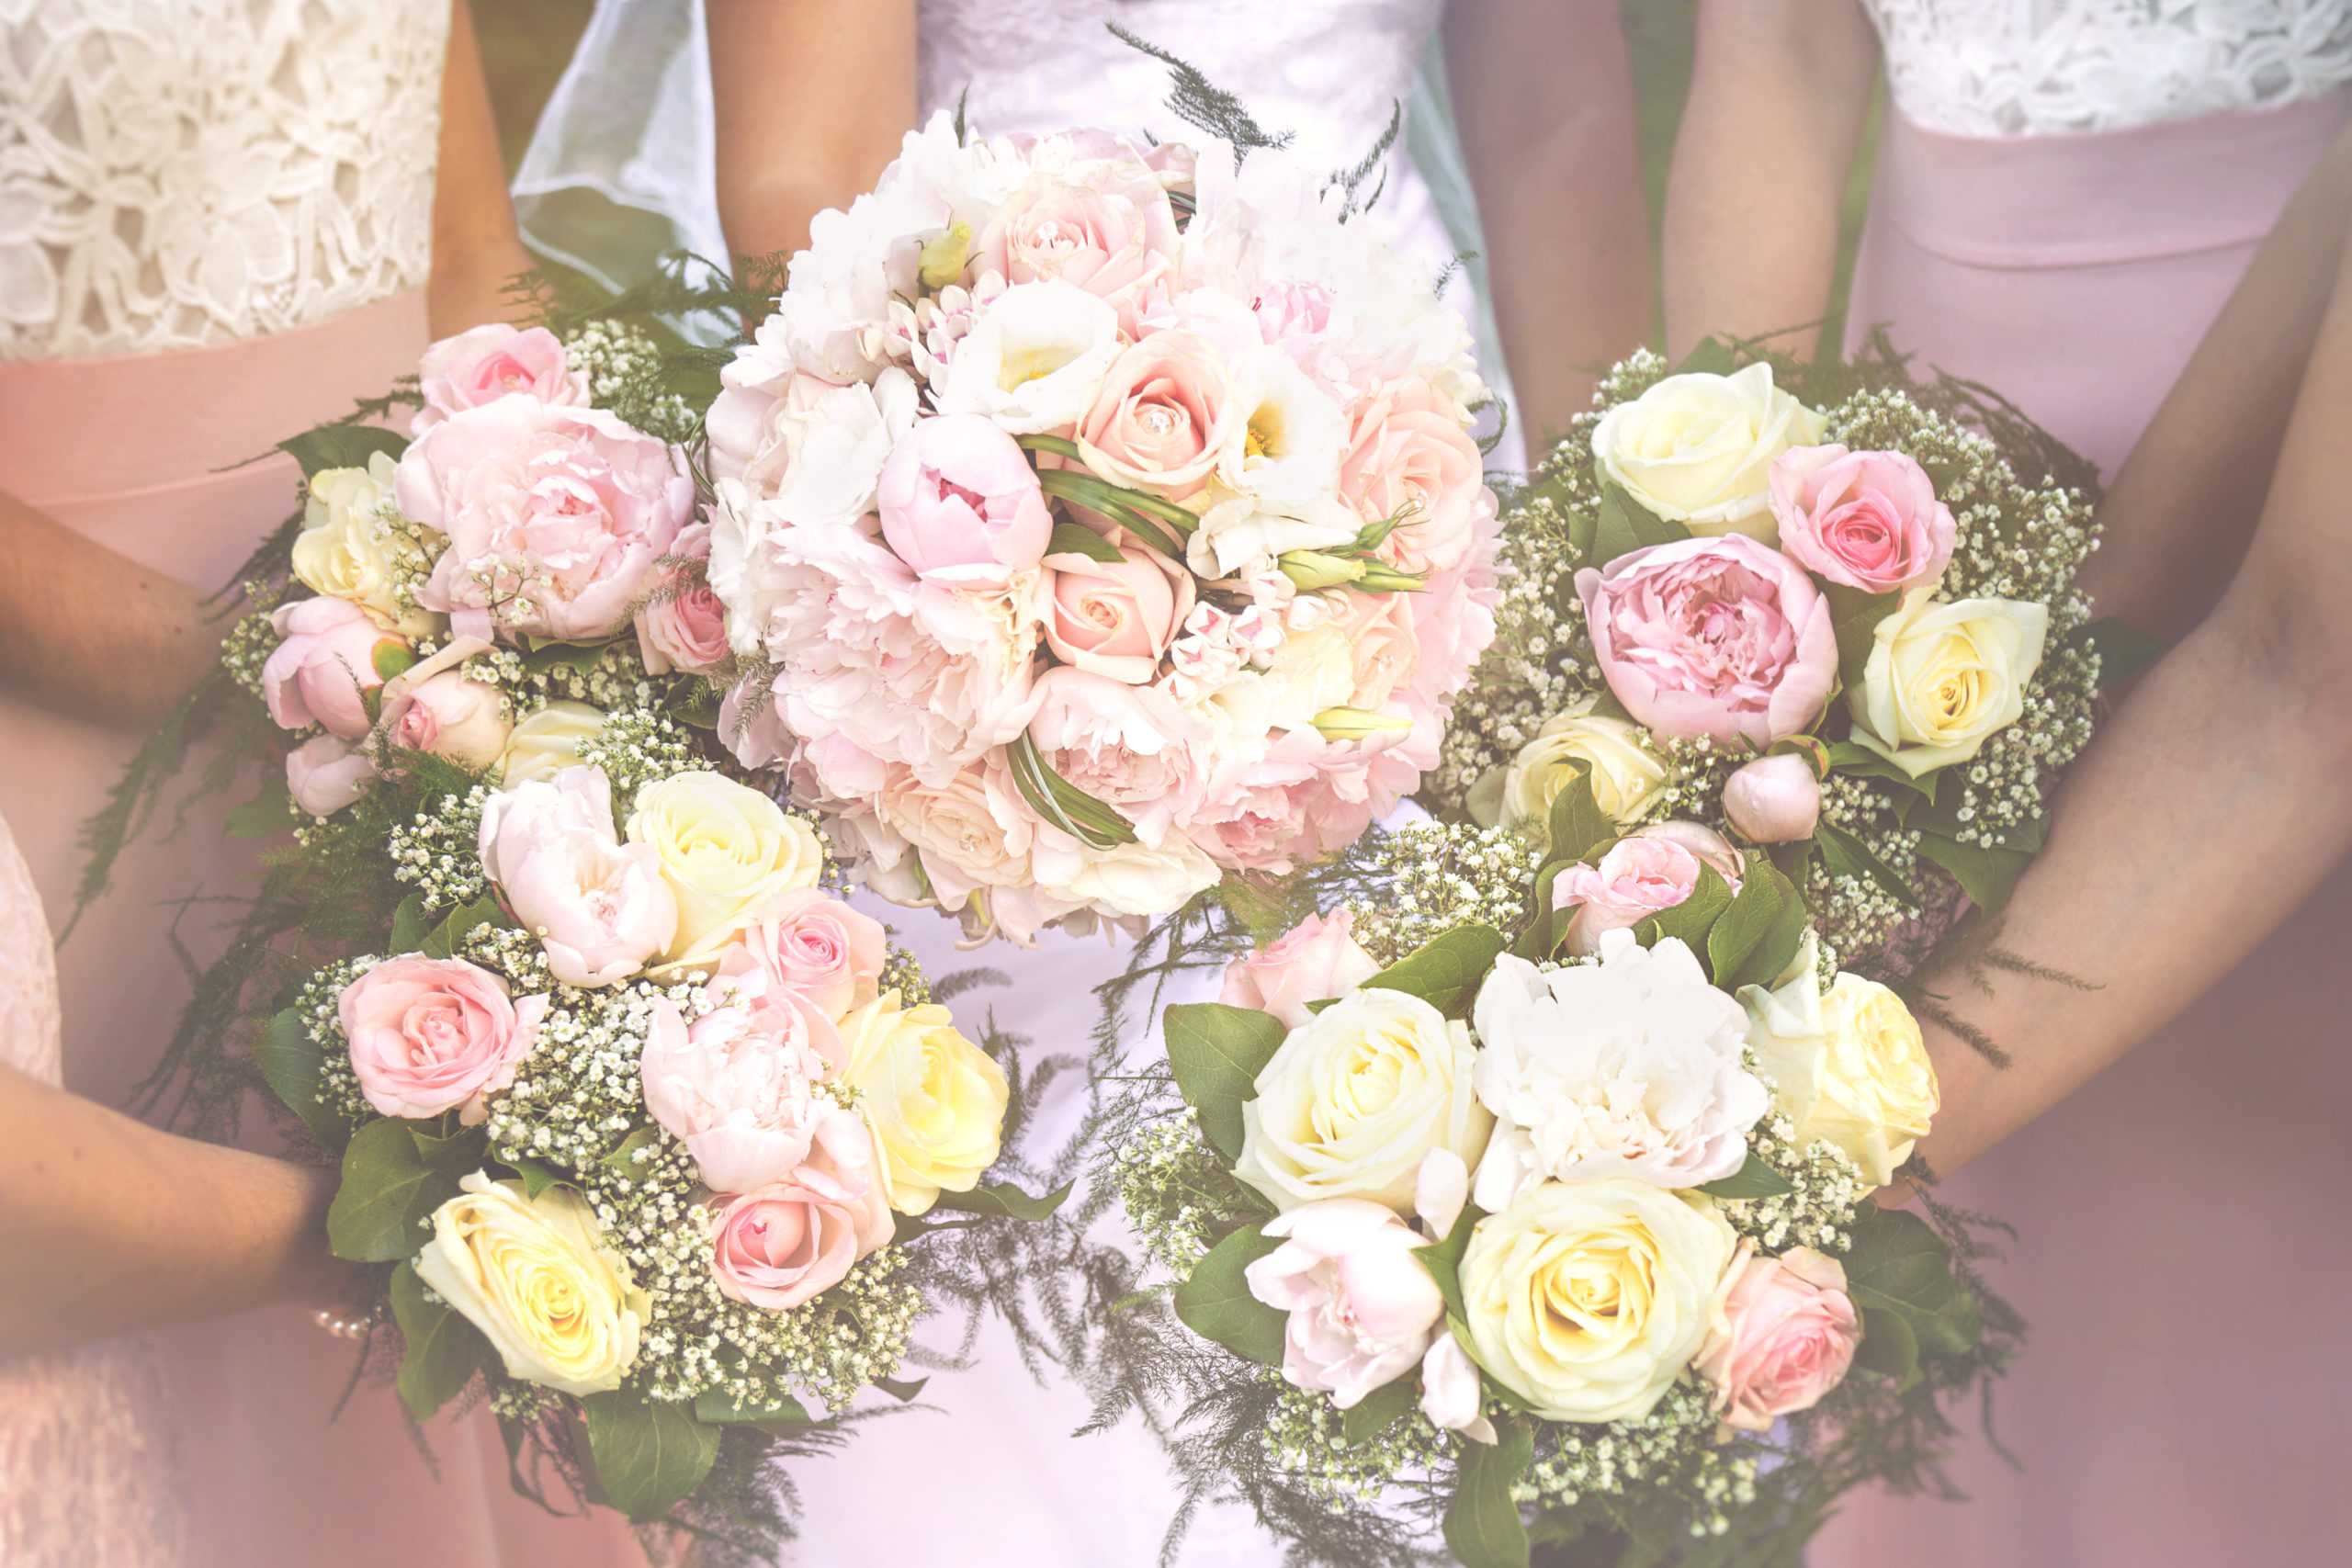 Photographe de mariage, bouquets de la mariée et demoiselles d'honneur